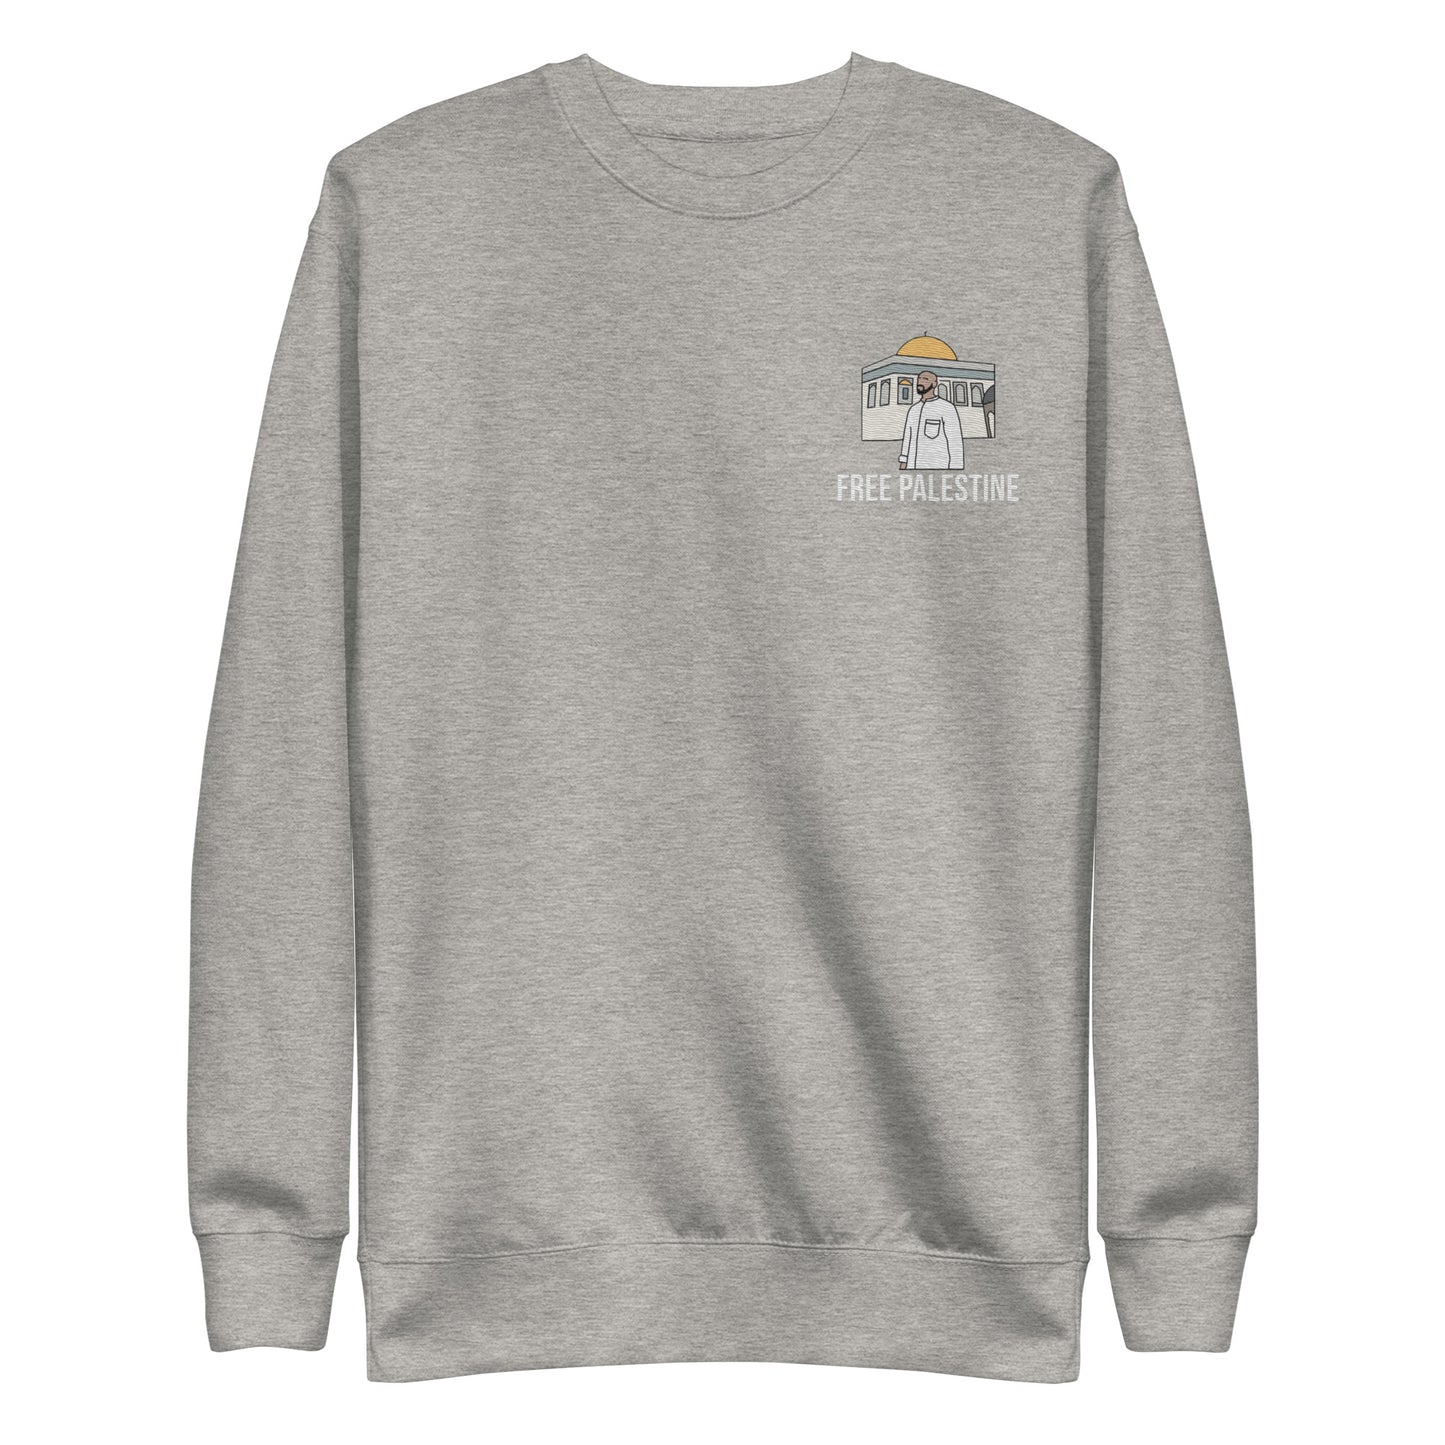 Premium Full Colour Embroidered Sweatshirt